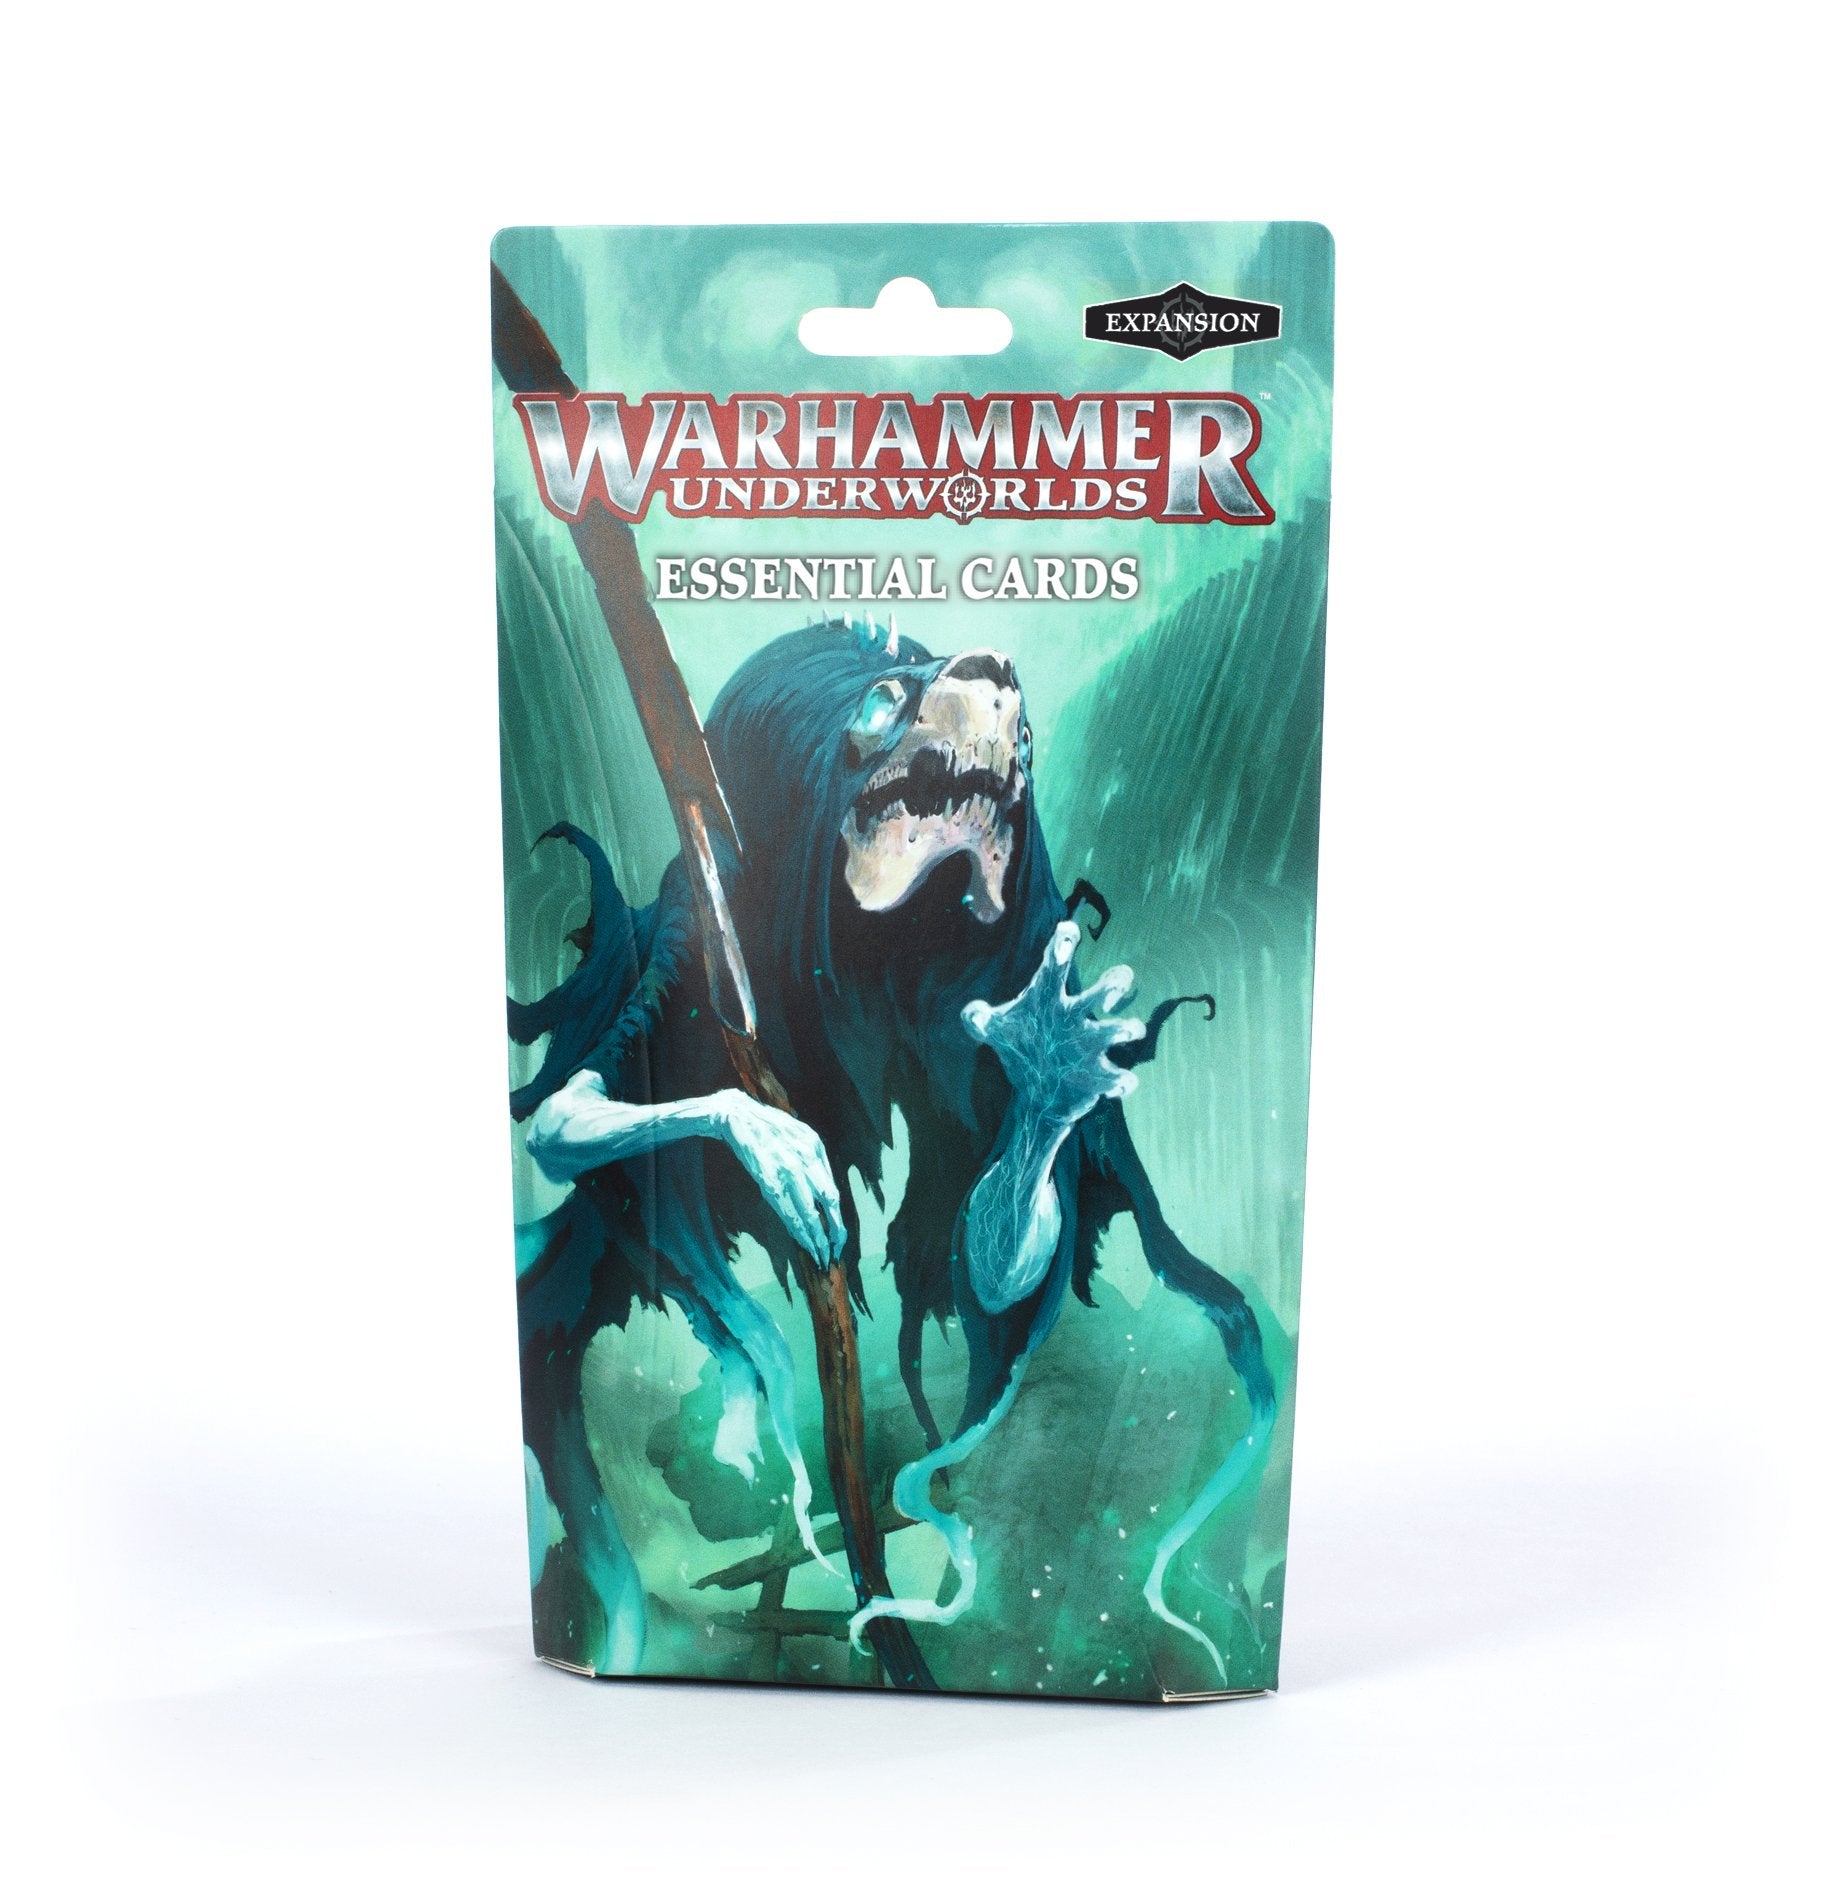 warhammer-underworlds essential cards